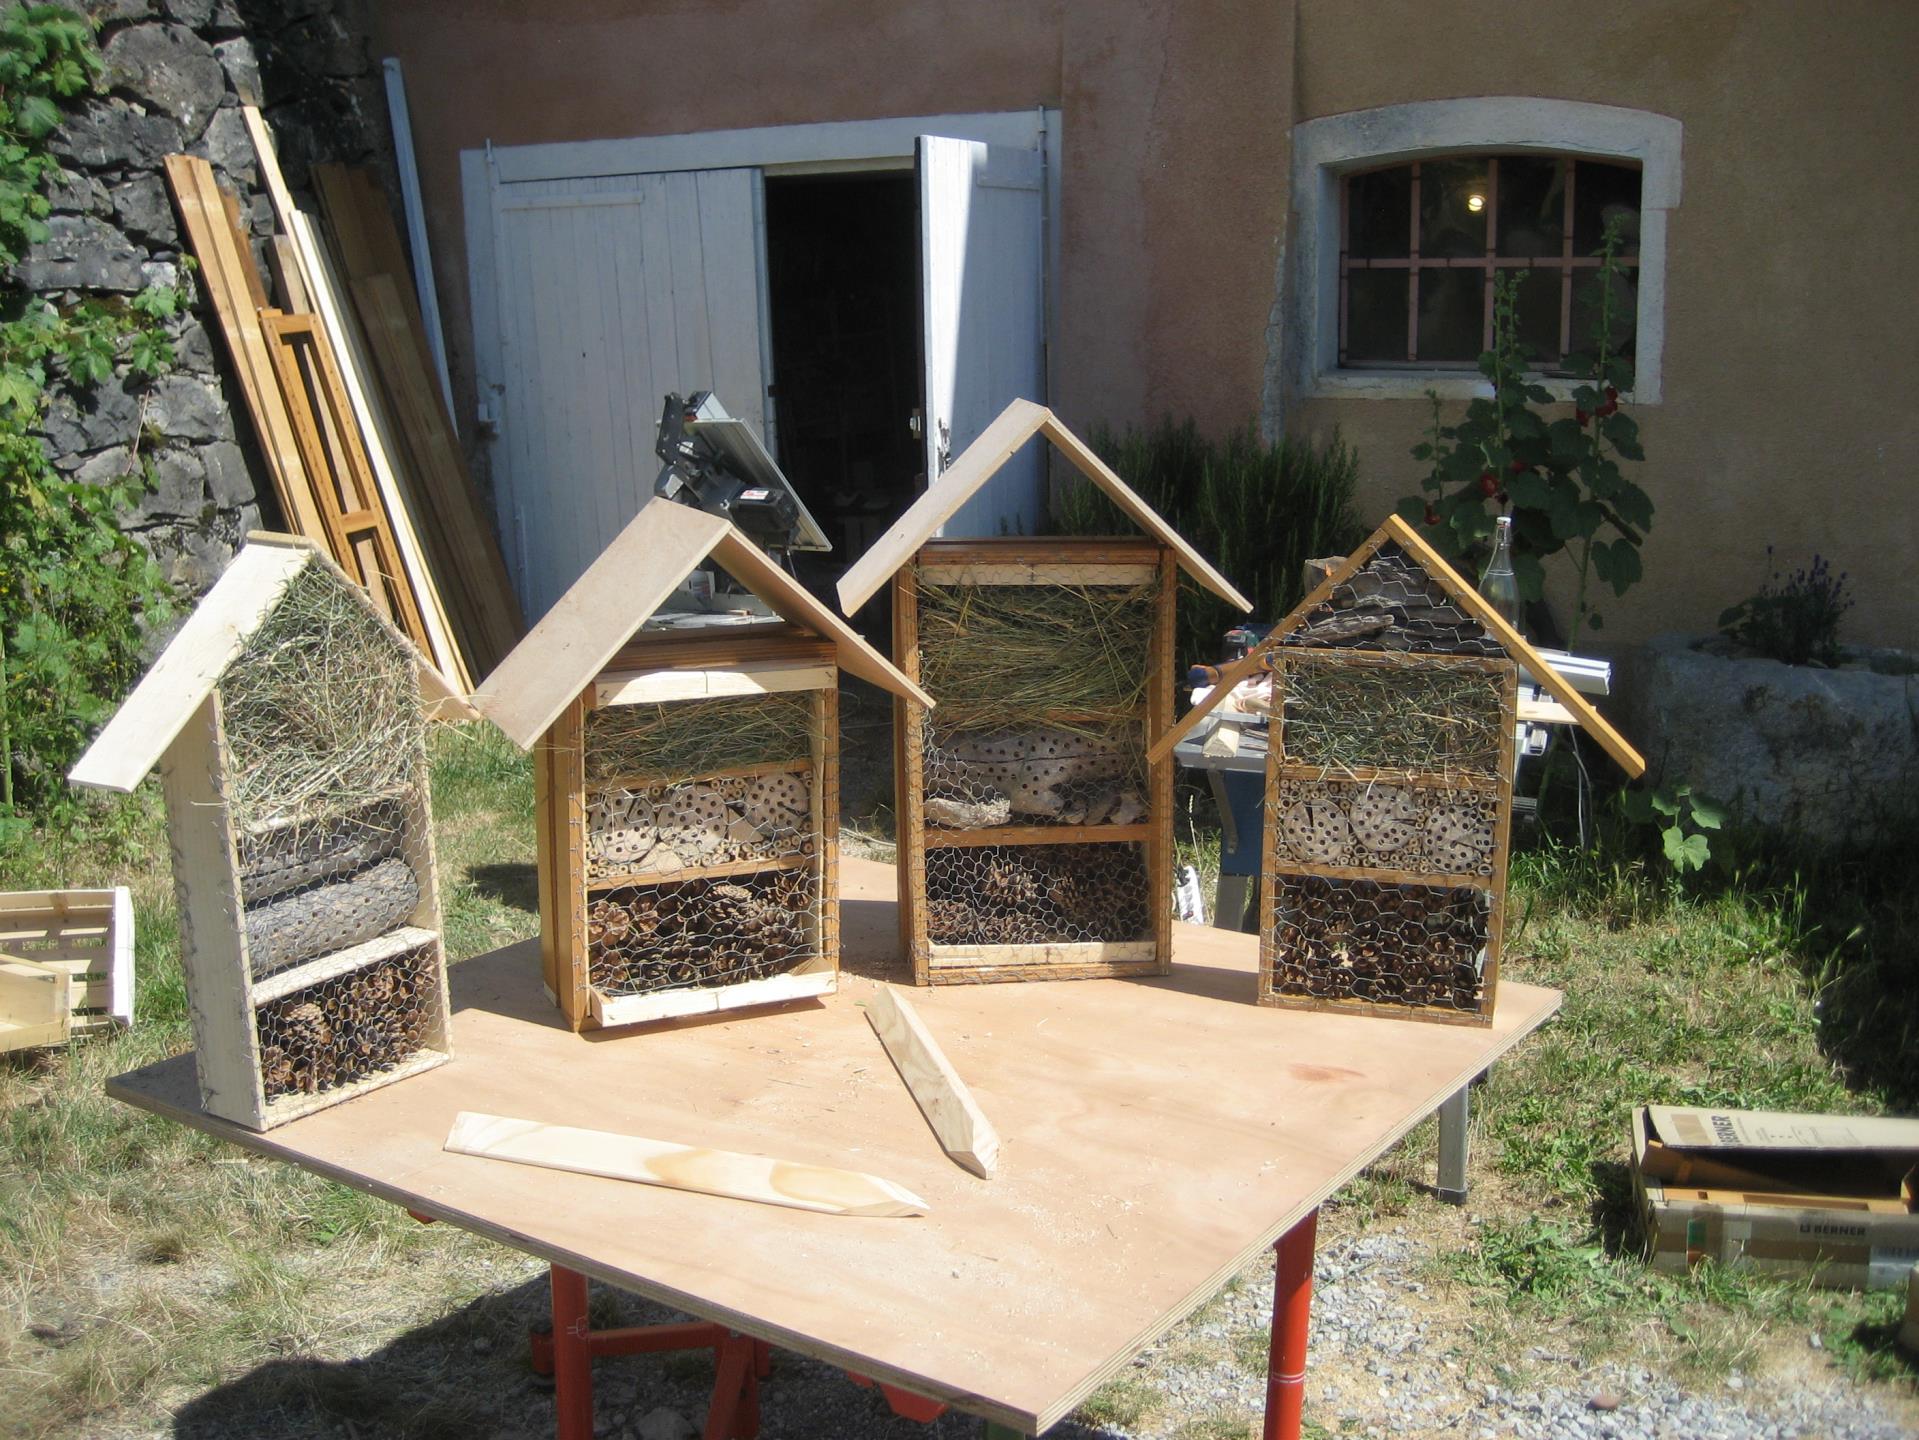 atelier jardiner au naturel - construction d'un hotel à insecte